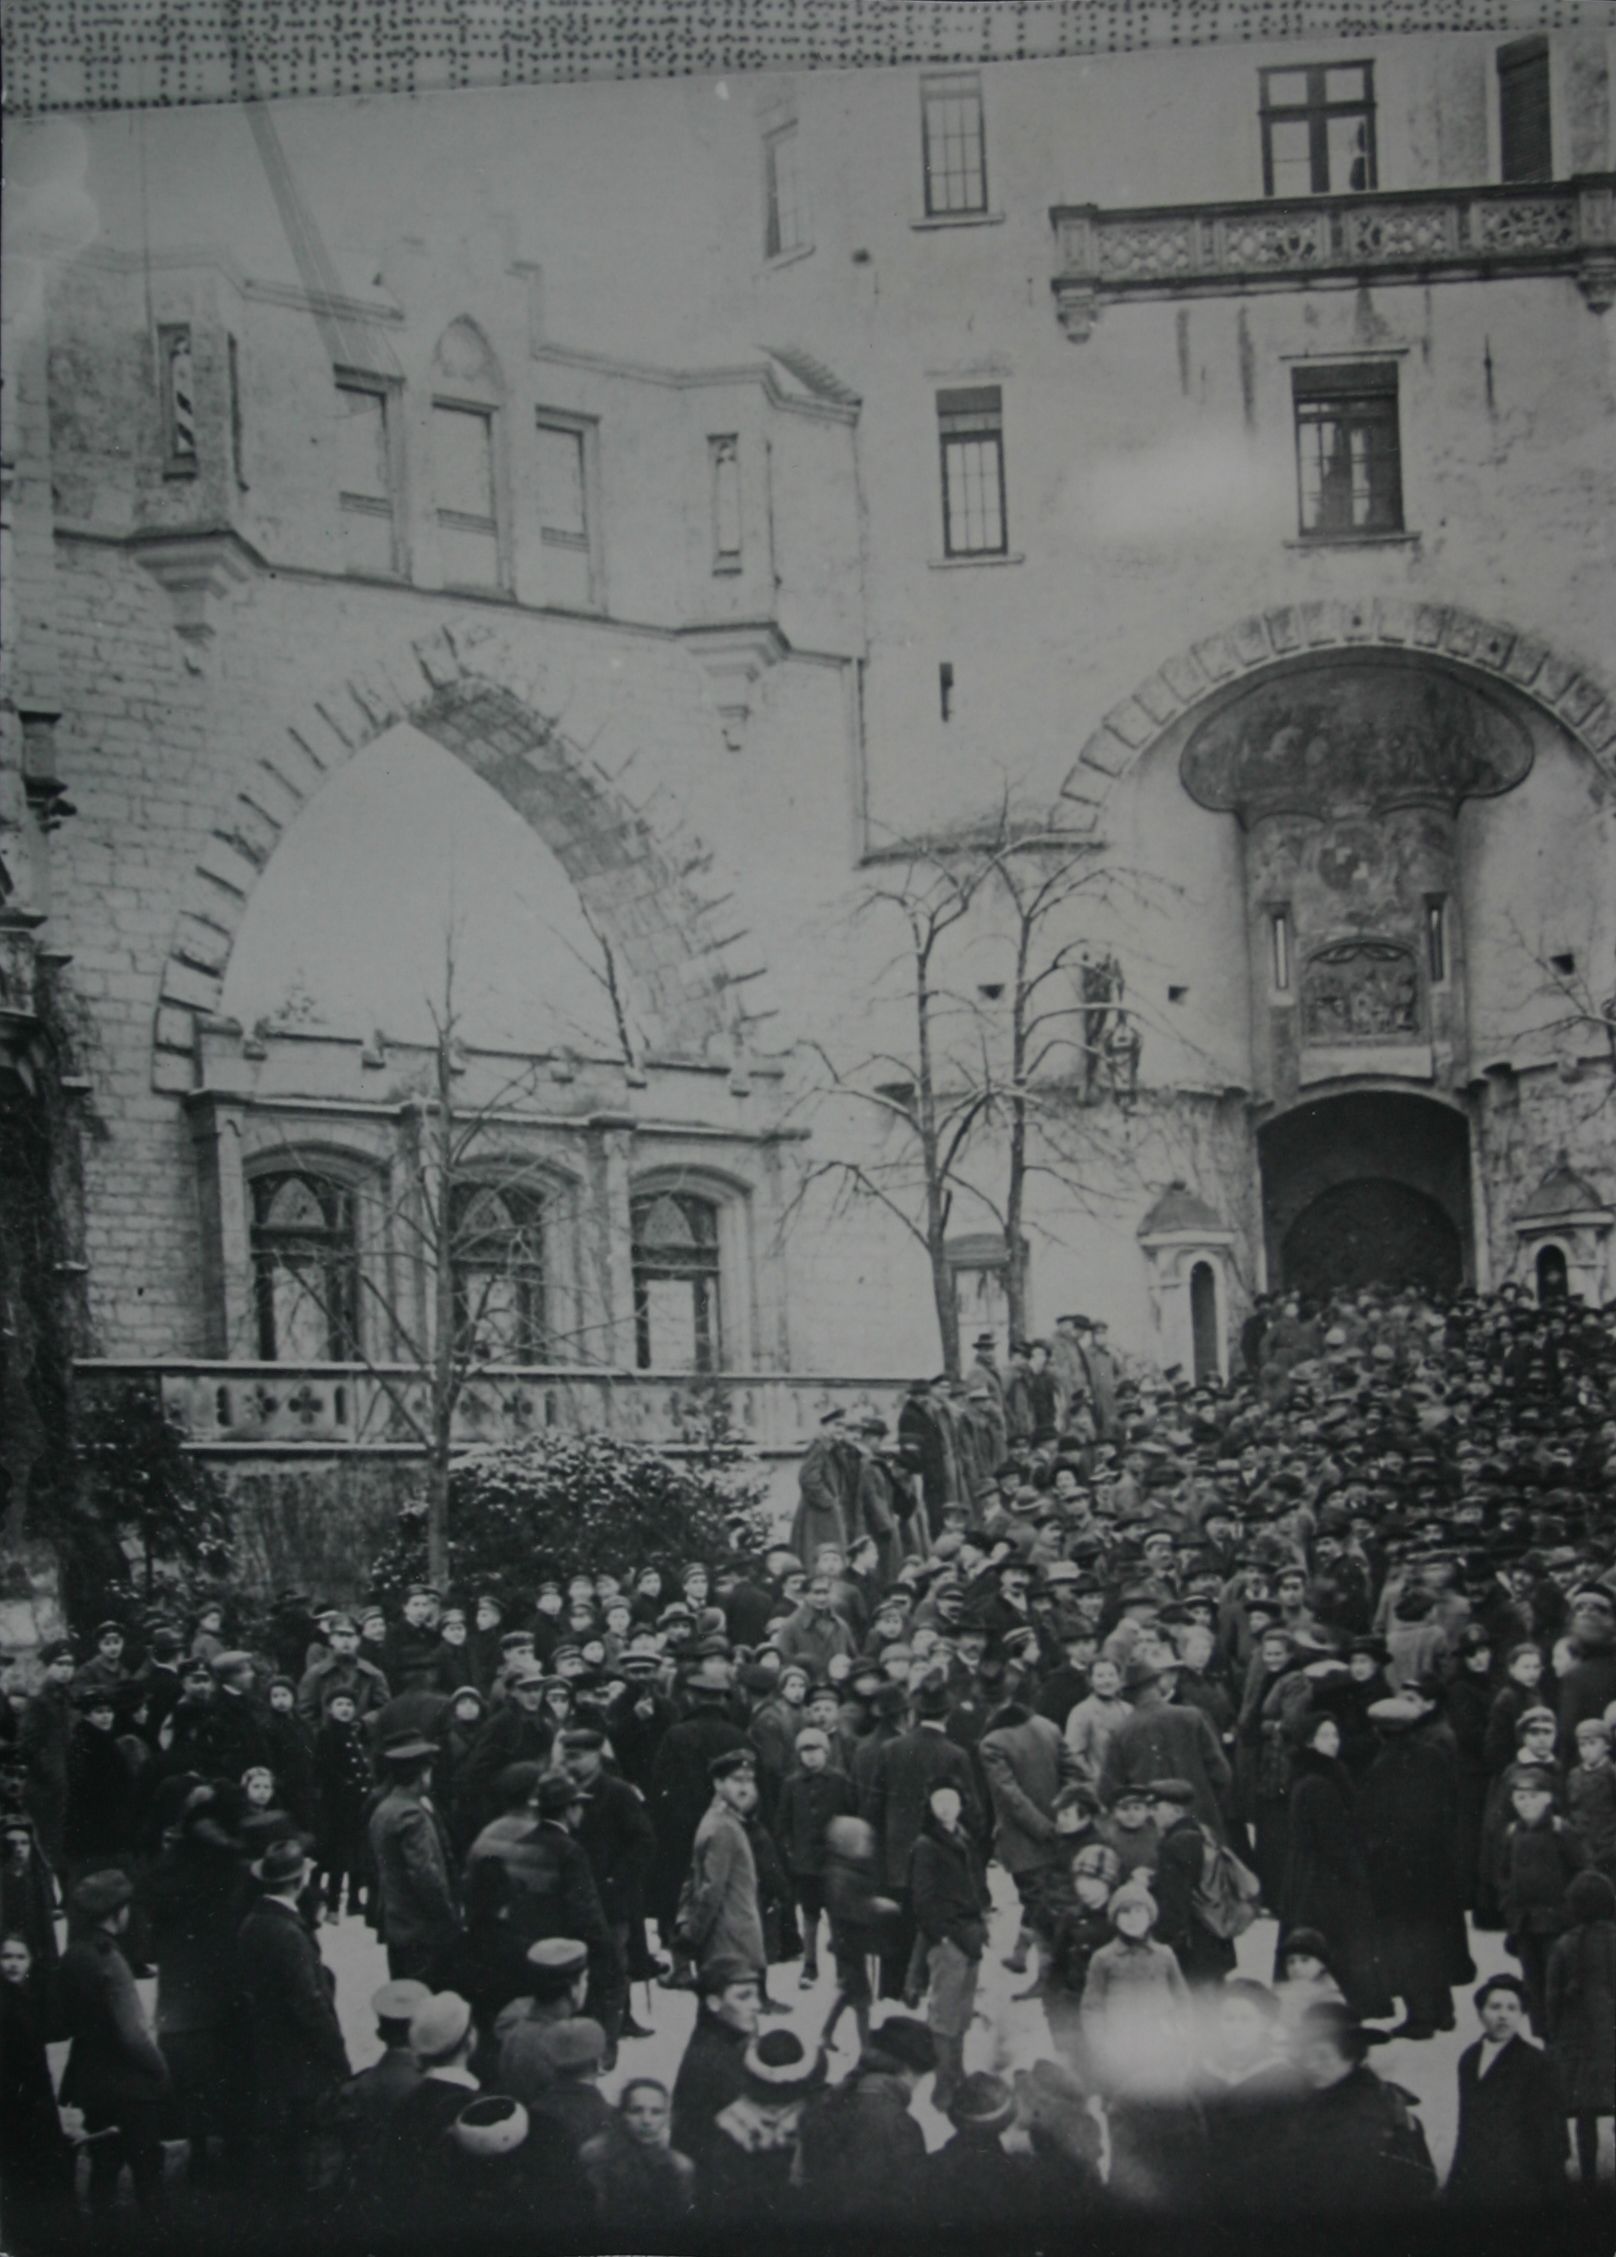 Am 1. Februar 1919 zogen hunderte Kriegsbeschädigte zum Schloss in Sigmaringen. Der Ärger entlud sich in Gewalttätigkeit. (Vorlage: Staatsarchiv Sigmaringen Sa T 1 Sa 75/264)